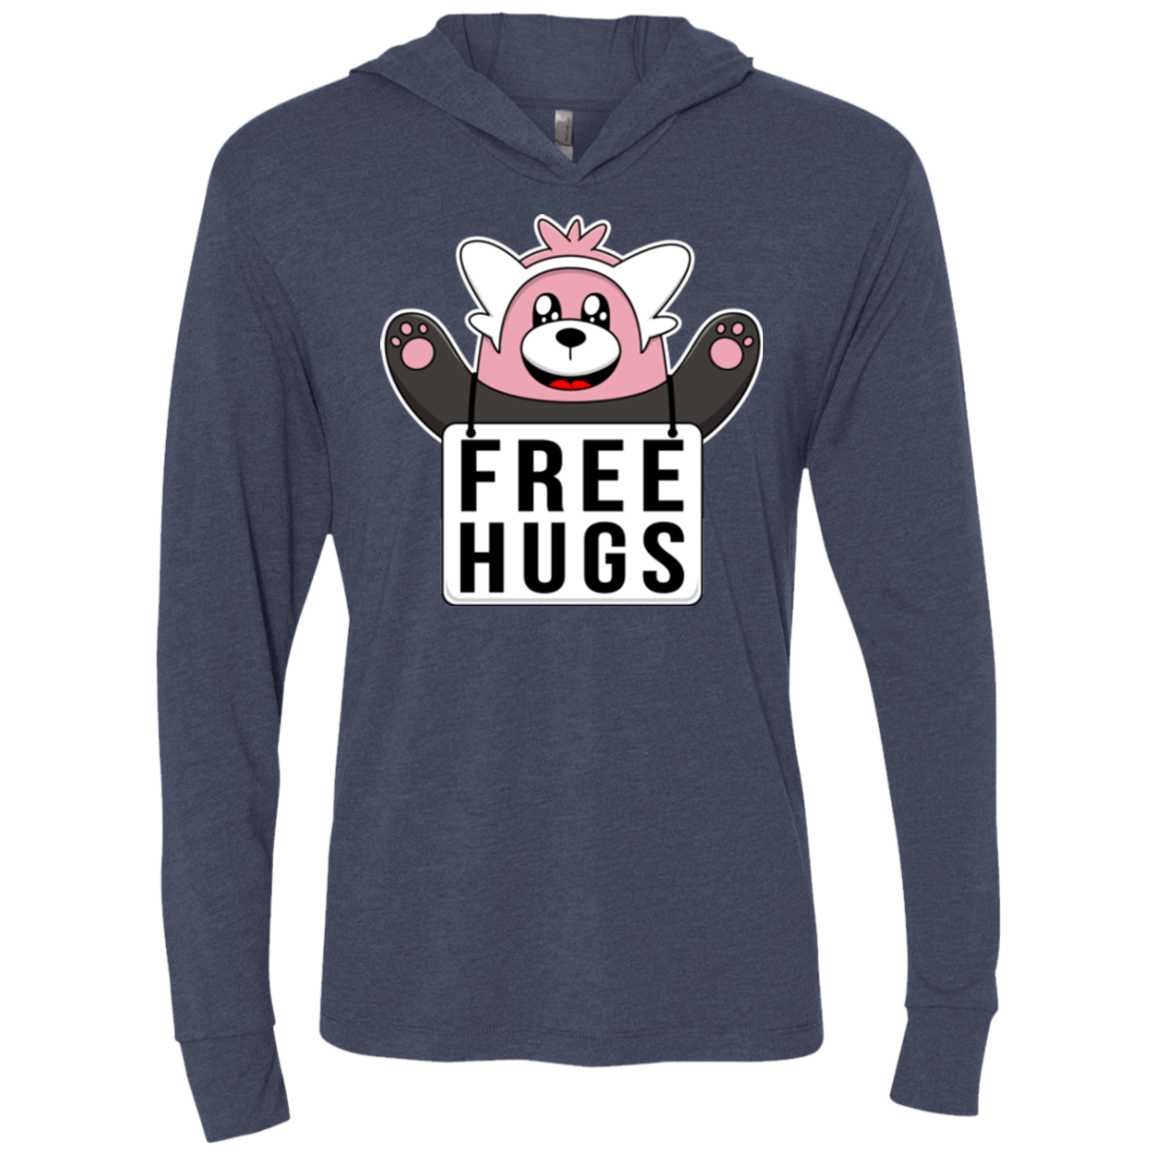 Free Hugs Triblend Long Sleeve Hoodie Tee